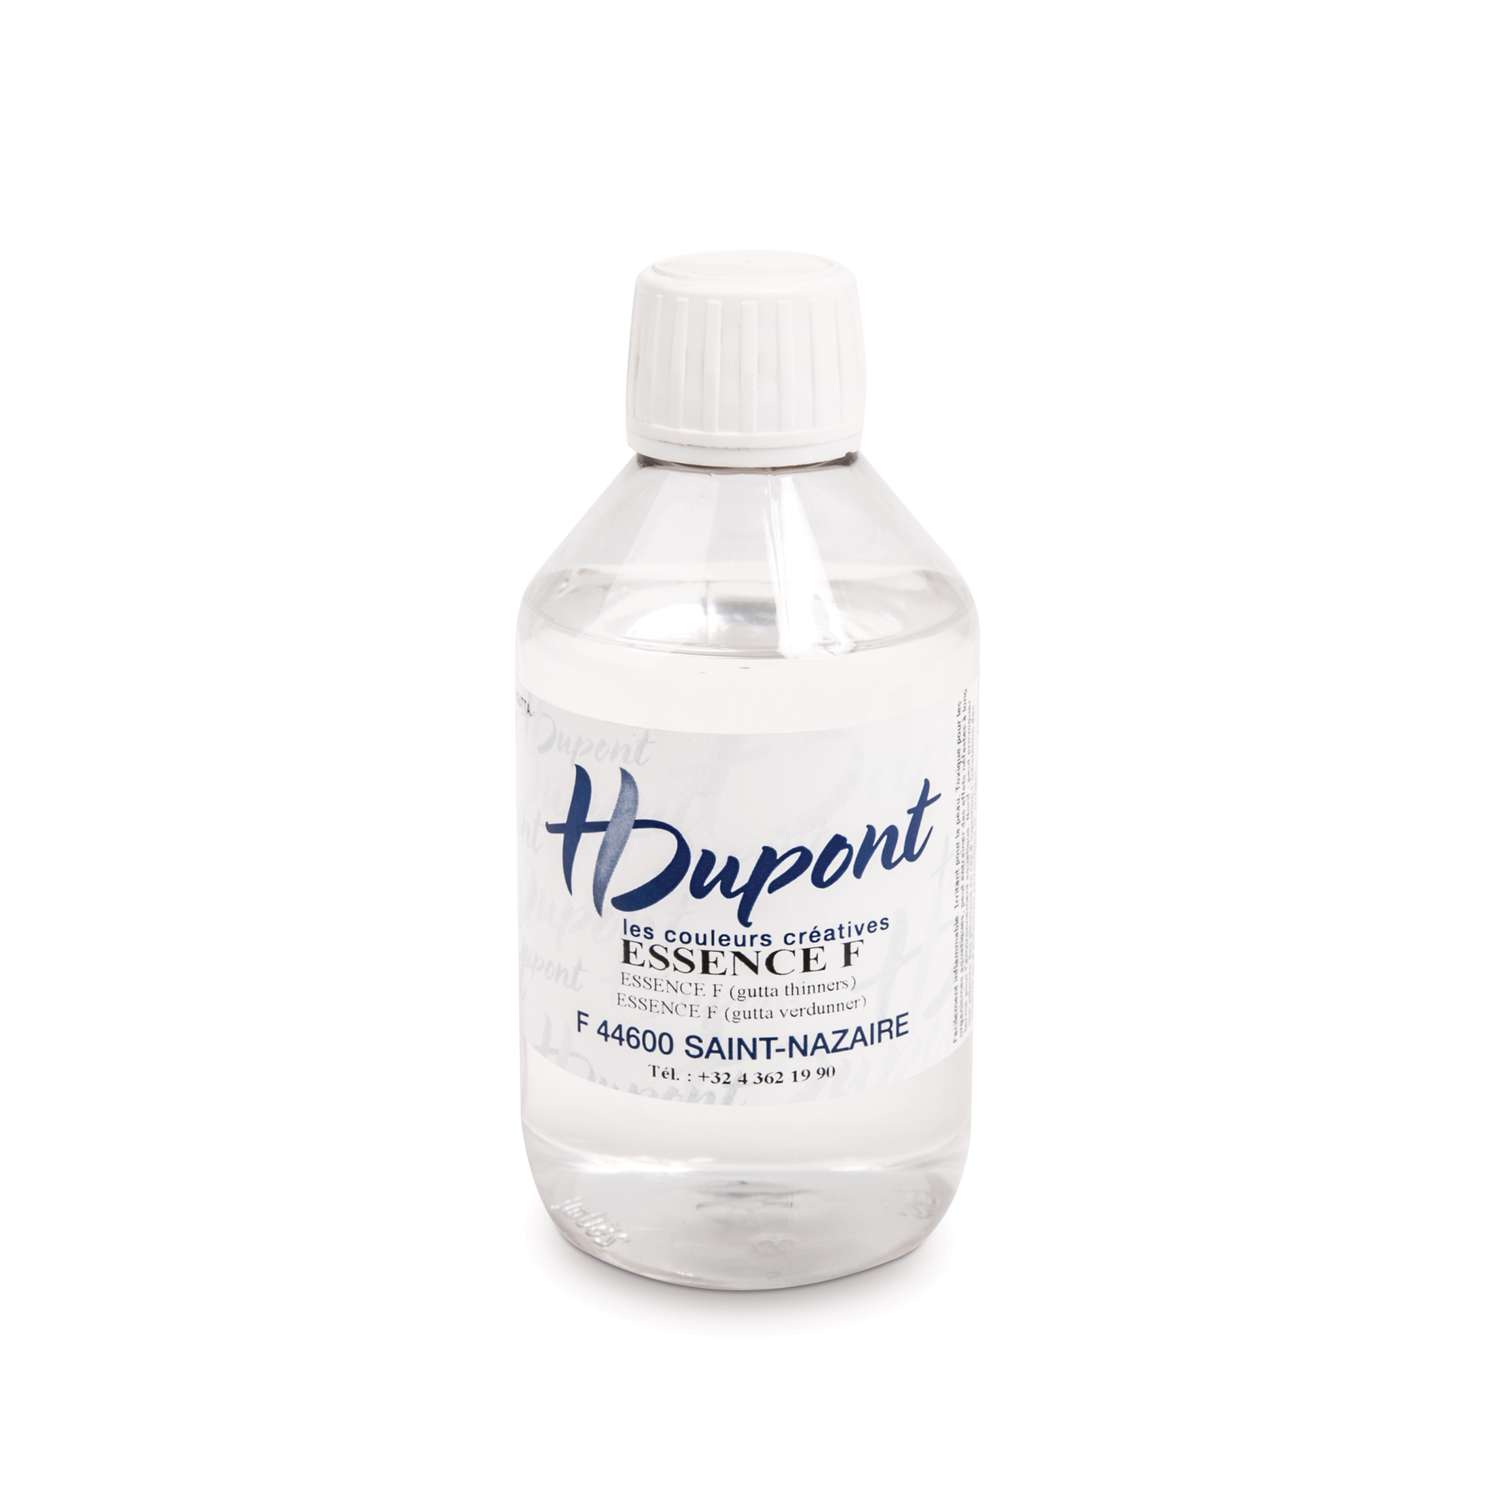 H Dupont essence F (solvent-based washing)